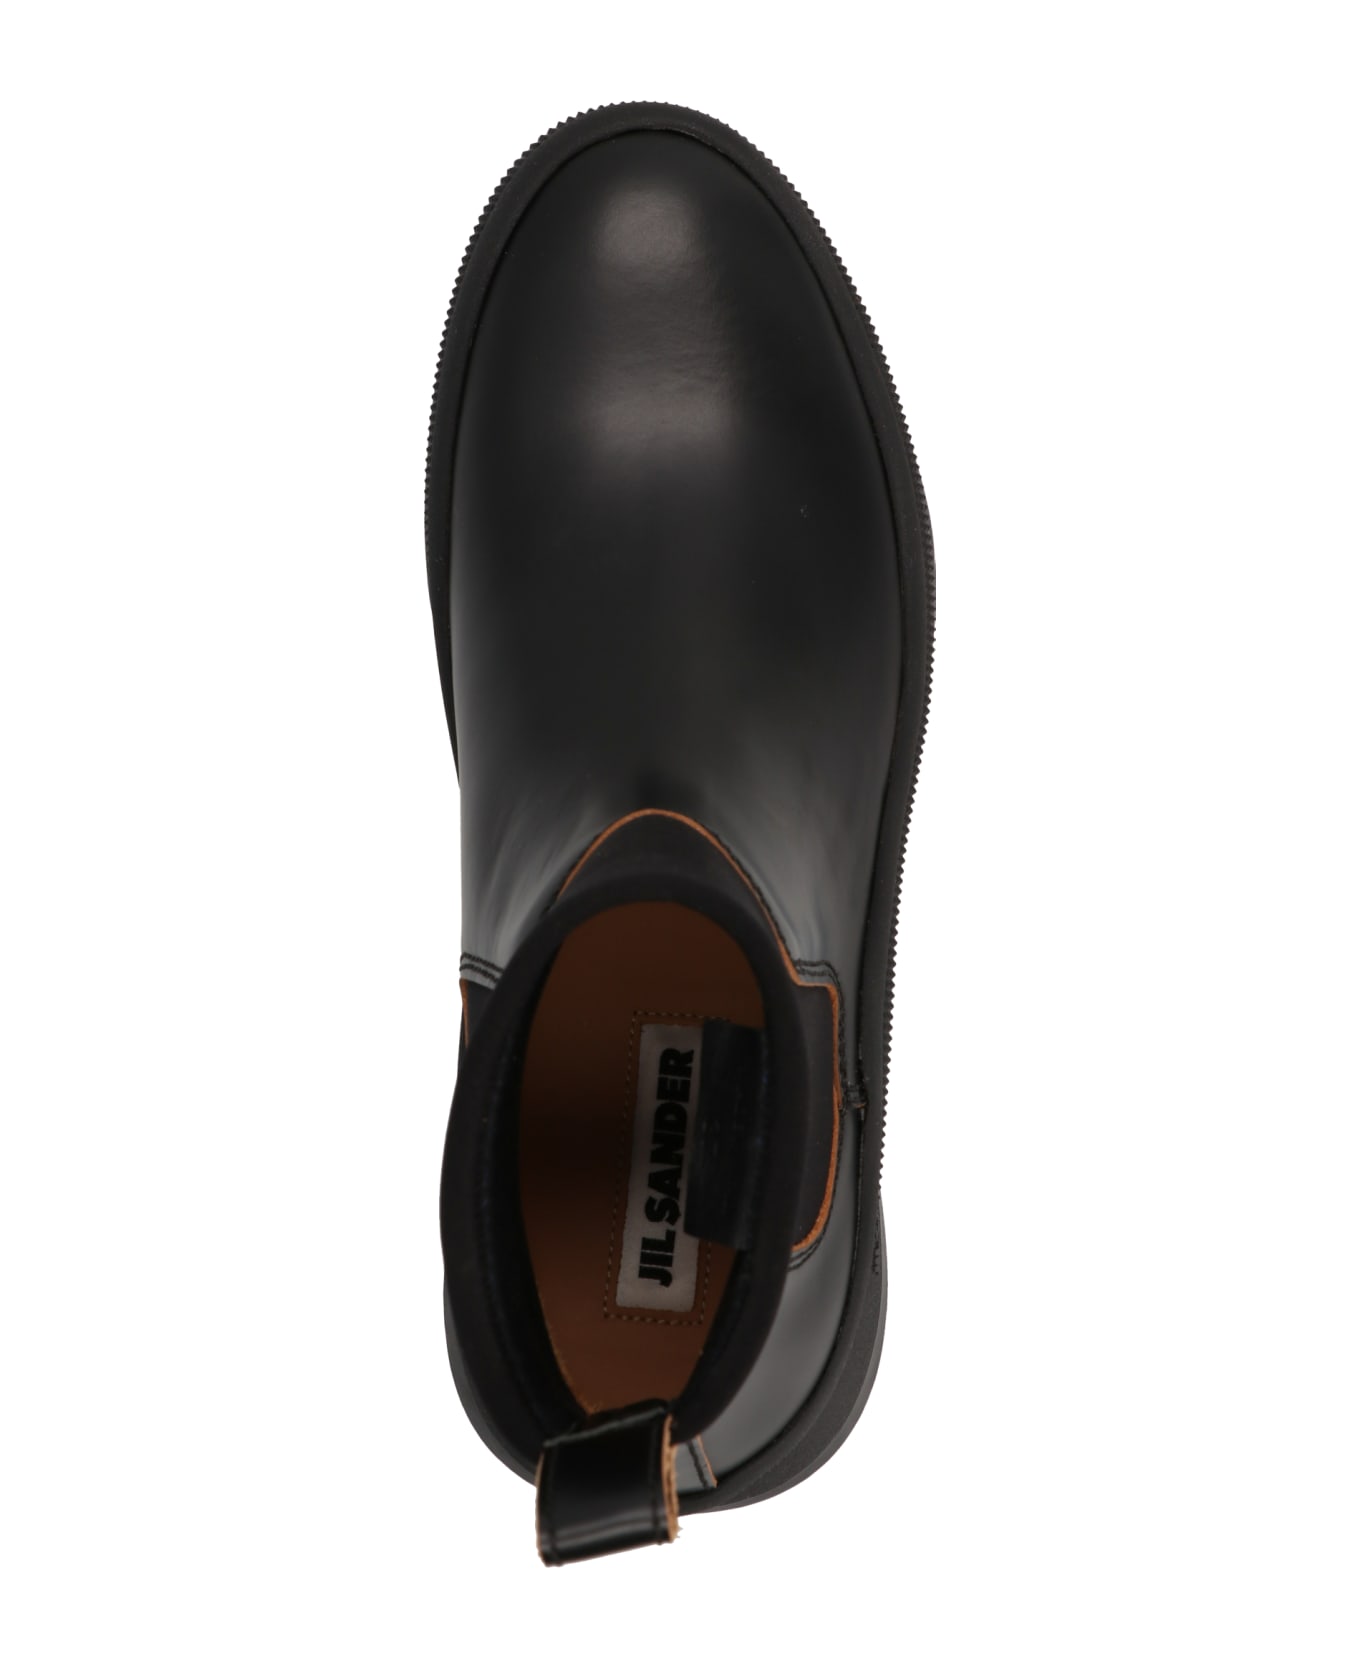 Jil Sander 'antik Leather' Ankle Boots - Black  